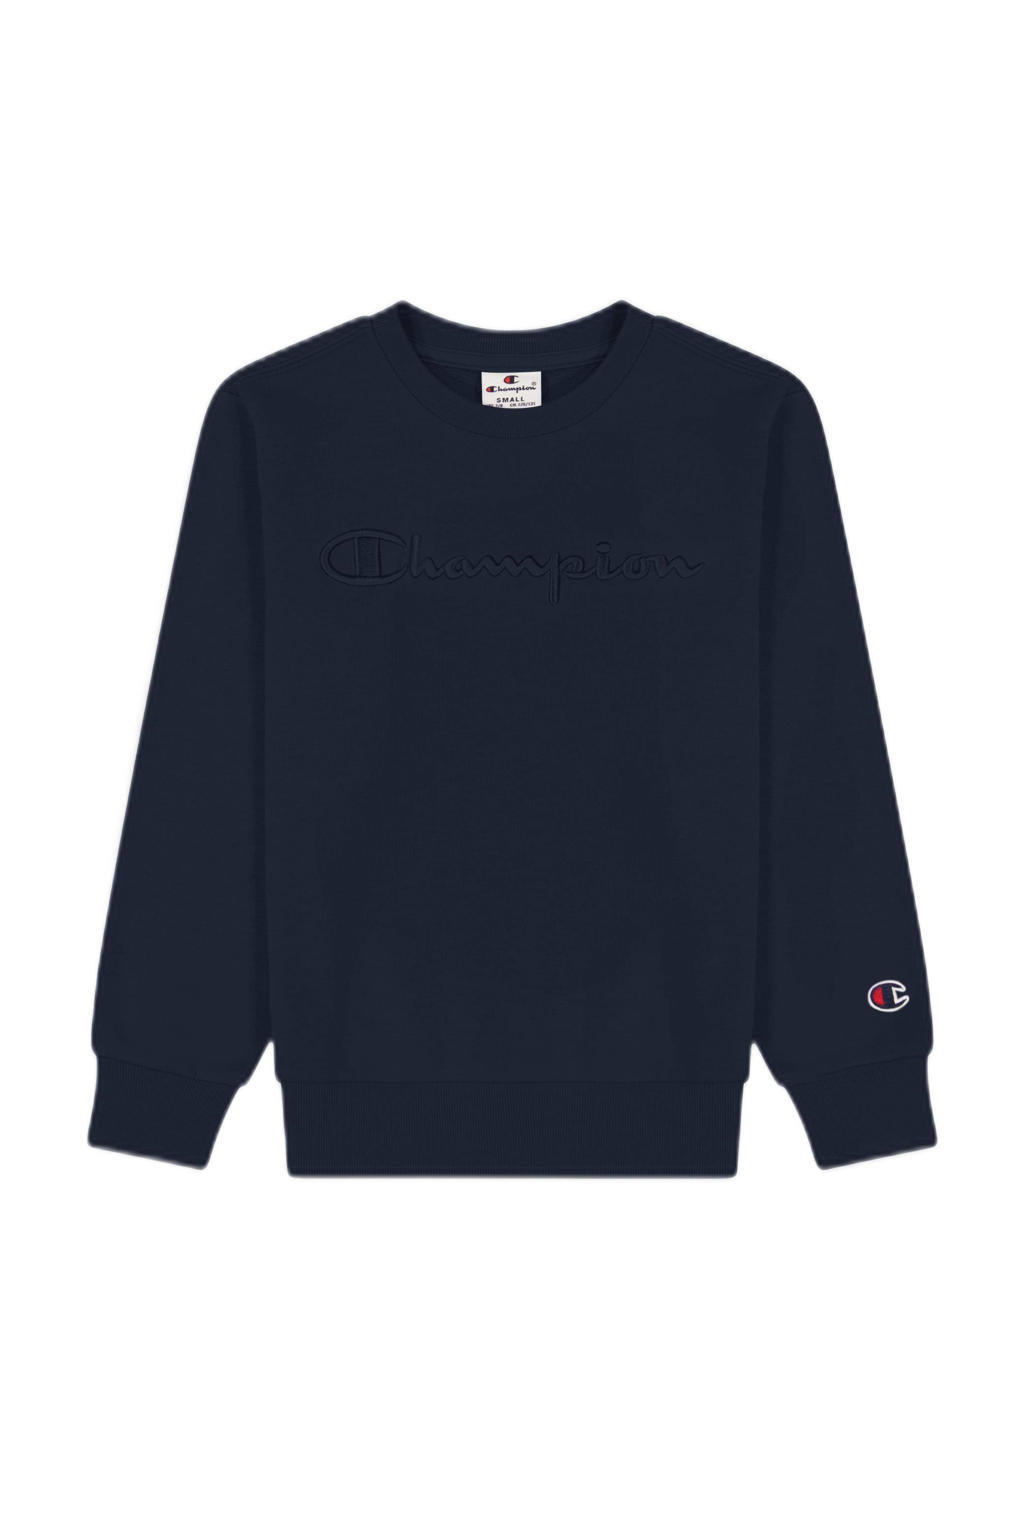 Marineblauwe jongens Champion sweater met logo dessin, lange mouwen en ronde hals